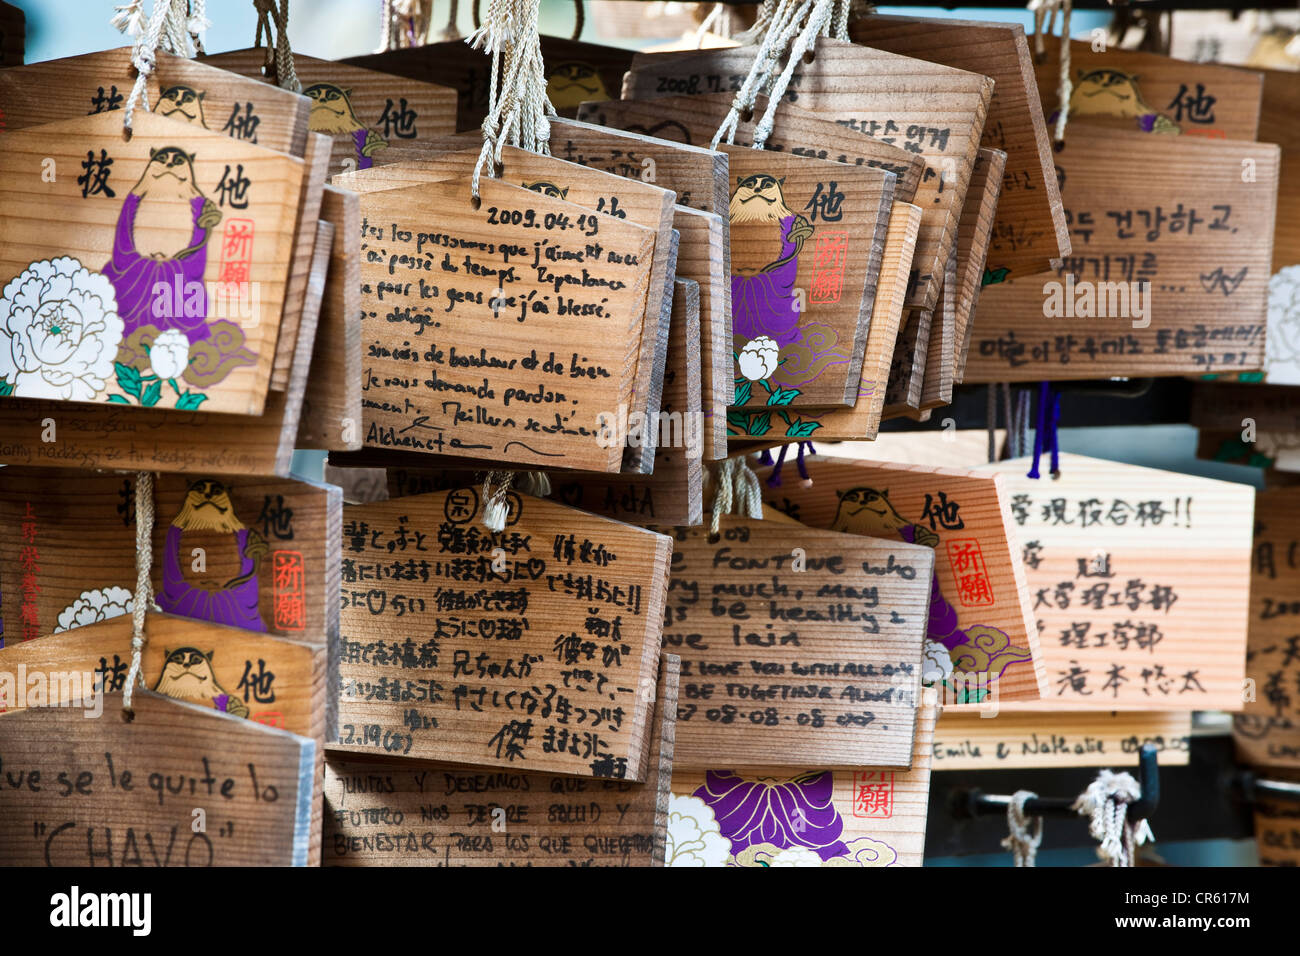 Japan, Insel Honshu, Tokyo, der Ueno-Park, der Tosho-gu Schrein Tempel, Votiv Broschüren genannt Ema in der Shinto-Tempeln Stockfoto